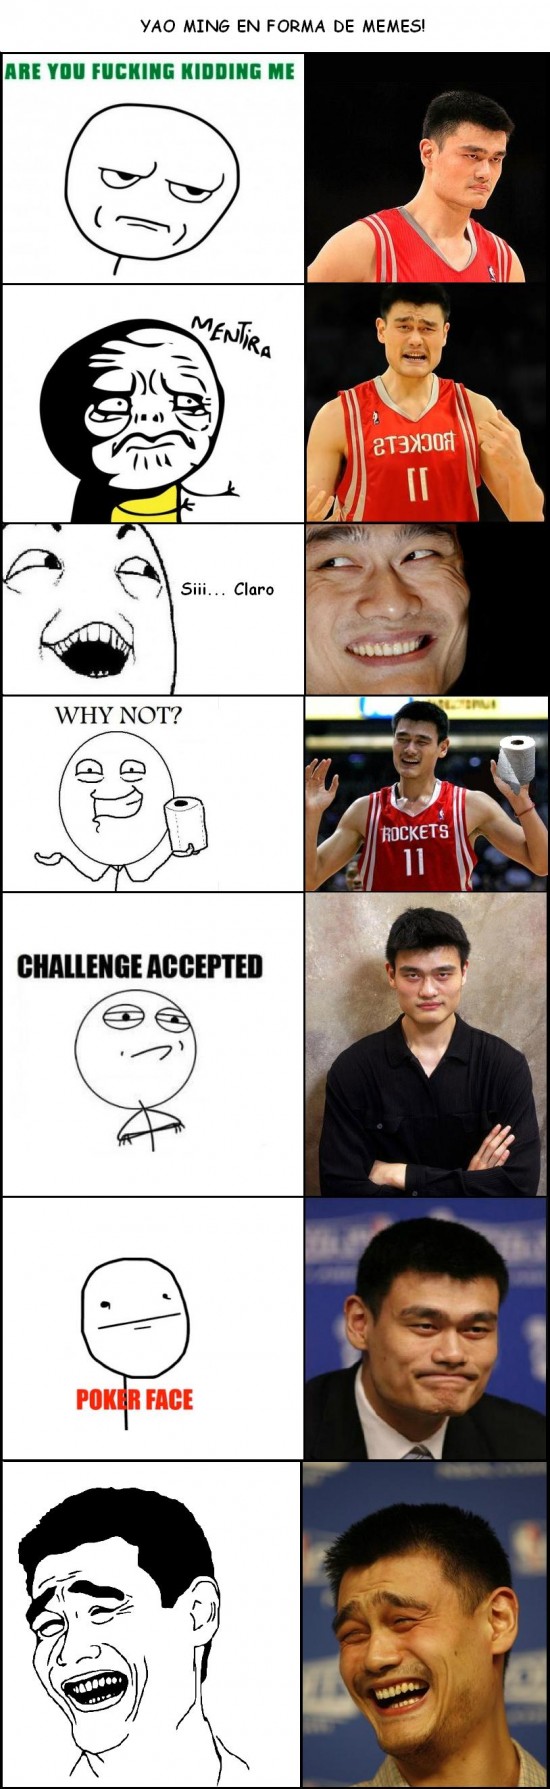 Yao - Yao Ming en forma de meme